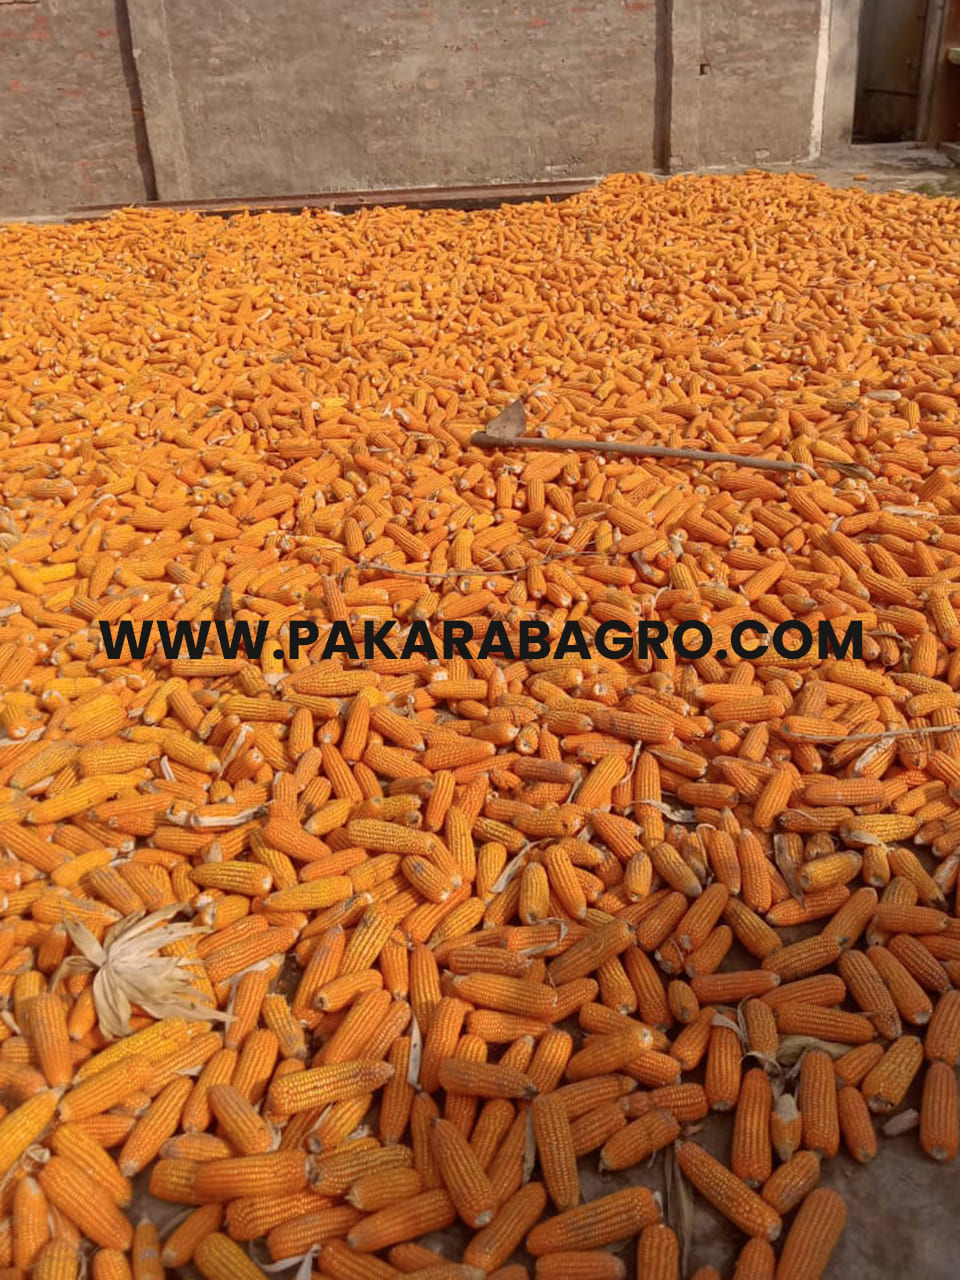 yellow maize, yellow corn, pakistan maize, pakistan yellow corn, corn suppliers in pakistan, maize suppliers in pakistan